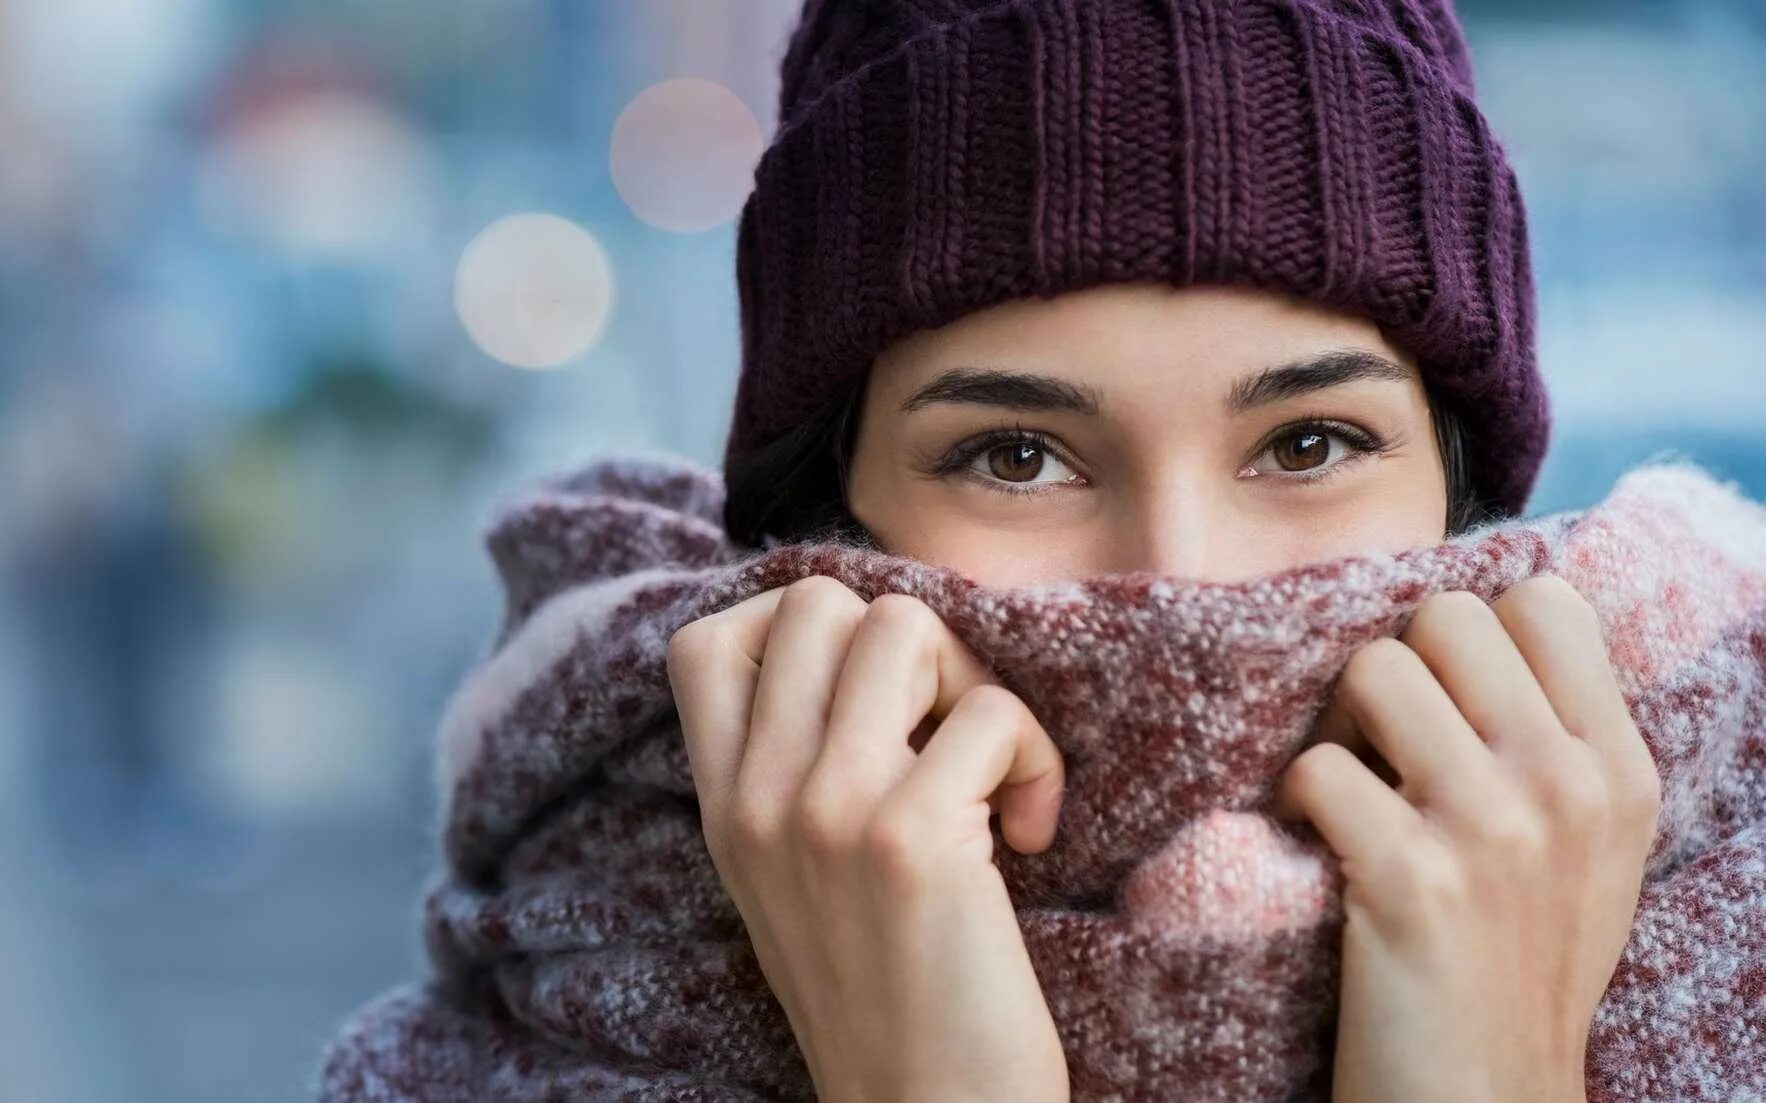 Тепло одеться зимой. Кутается в шарф. Шарф на человеке. Девушка укутанная в шарф. Девушка в теплой одежде.